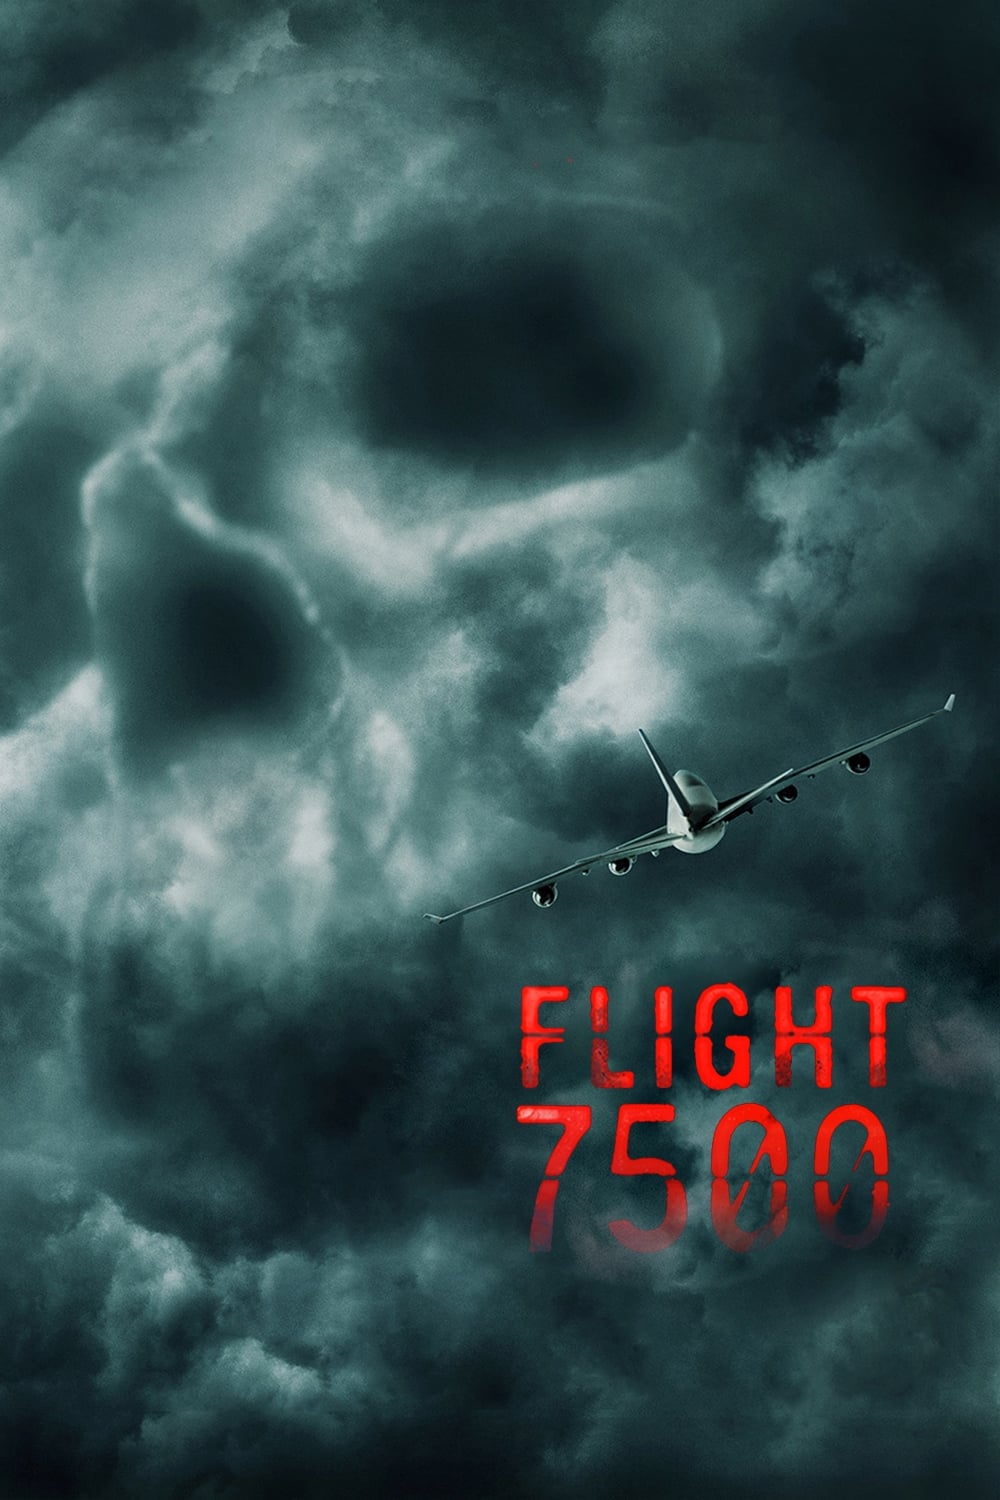 ดูหนังออนไลน์ฟรี Flight 7500 ไม่ตกก็ตาย